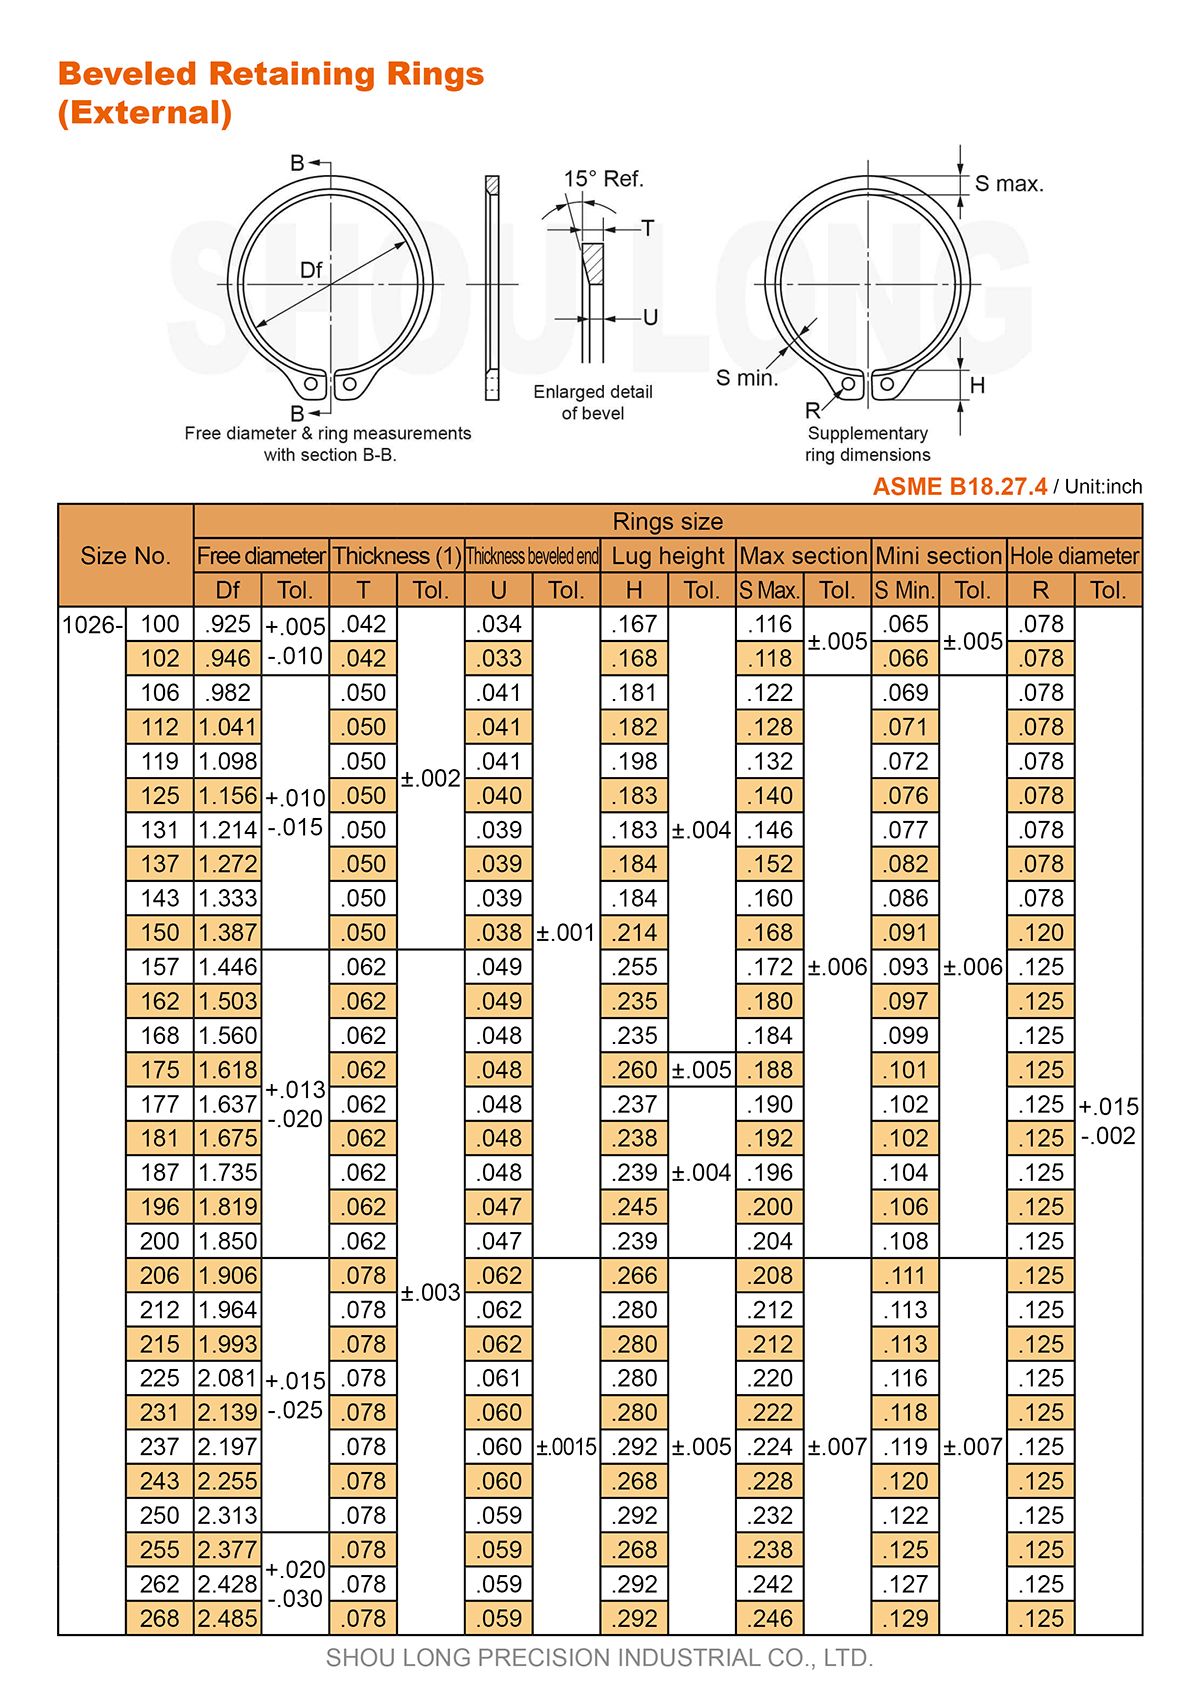 Spec of Inch Beveled Retaining Rings for Shaft ASME/ANSI B18.27.4-1